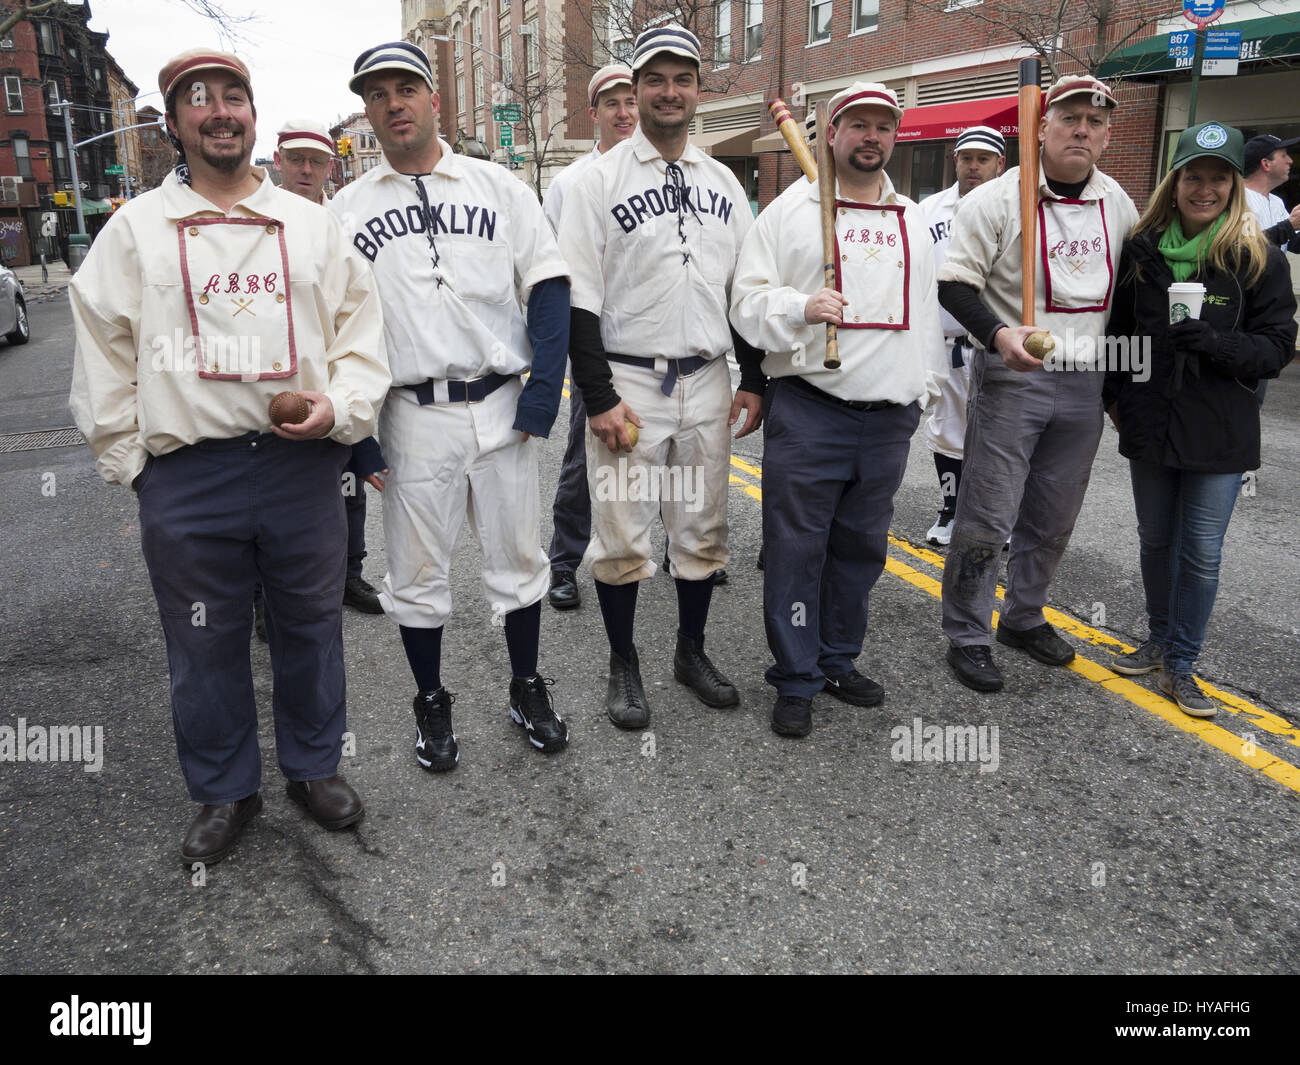 El equipo de béisbol histórico, el Brooklyn Atlantics, desfile en Prospect Park el sábado para celebrar el comienzo de la temporada de béisbol y el parque de 150 anni Foto de stock